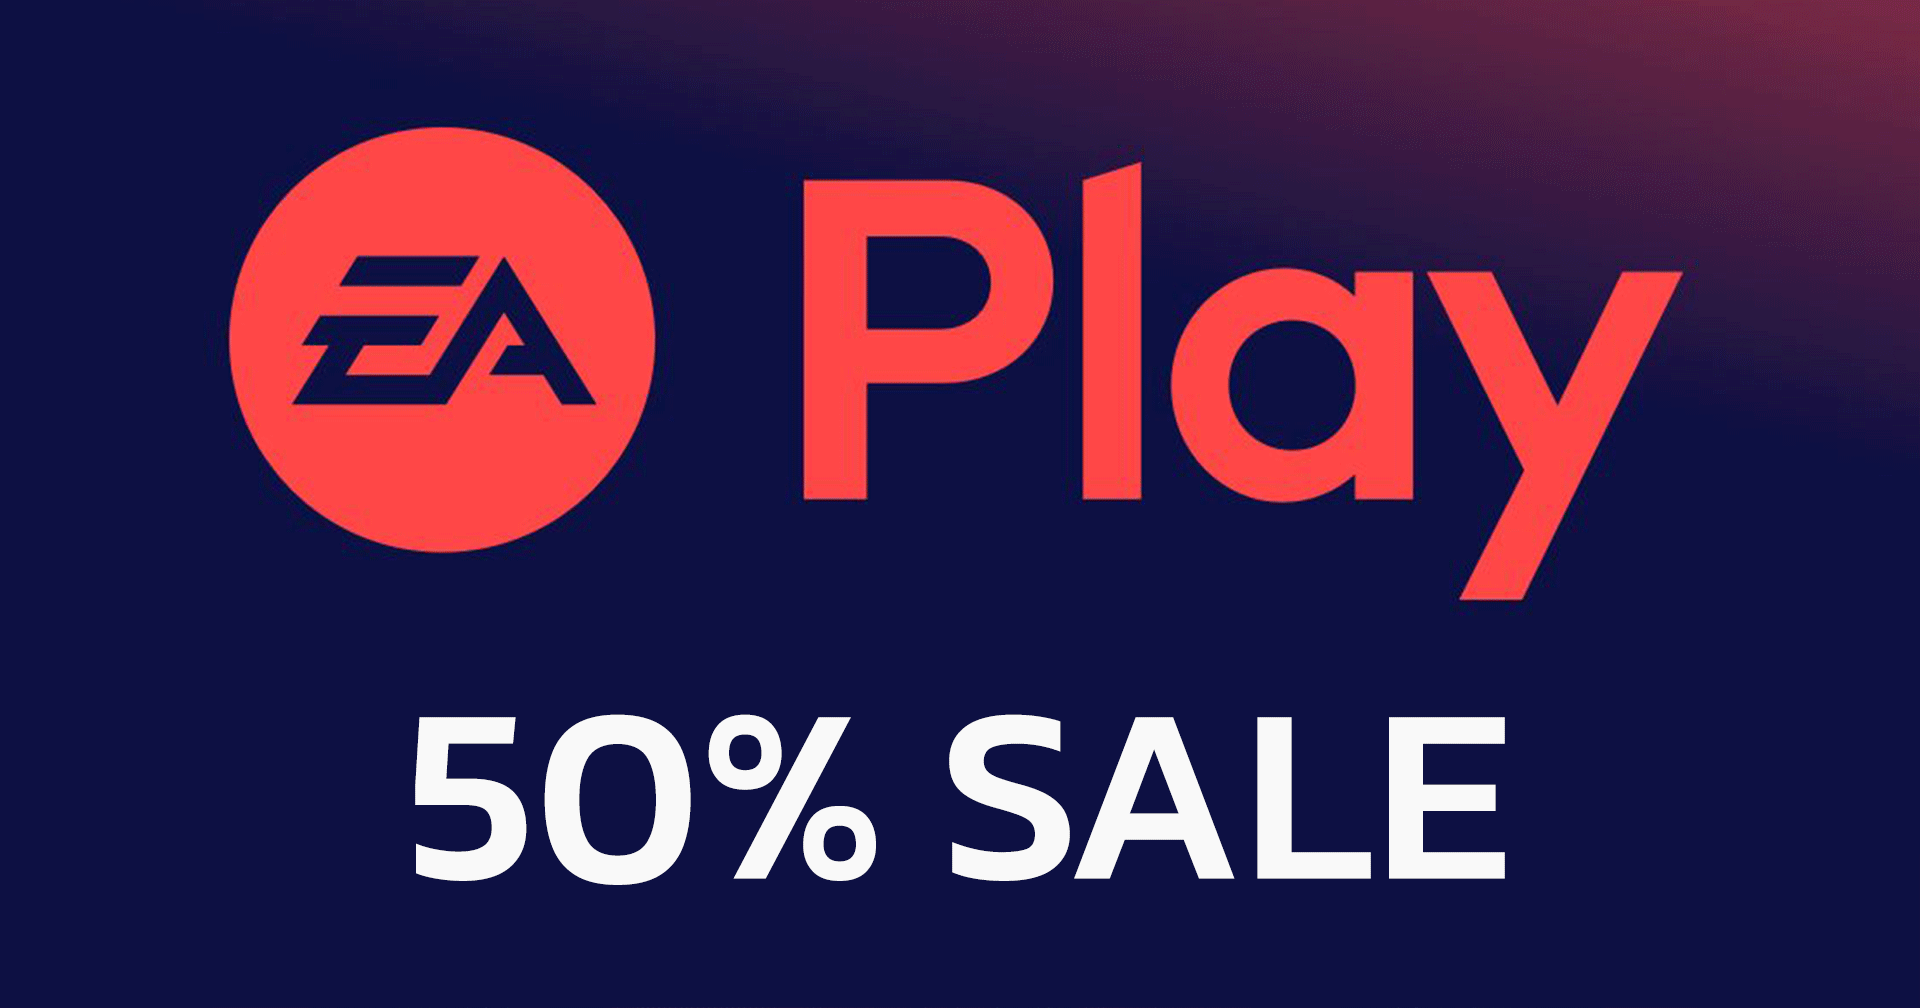 EA Play (1 ปี) ลดราคา 50% เหลือ 450 บาท บน Steam